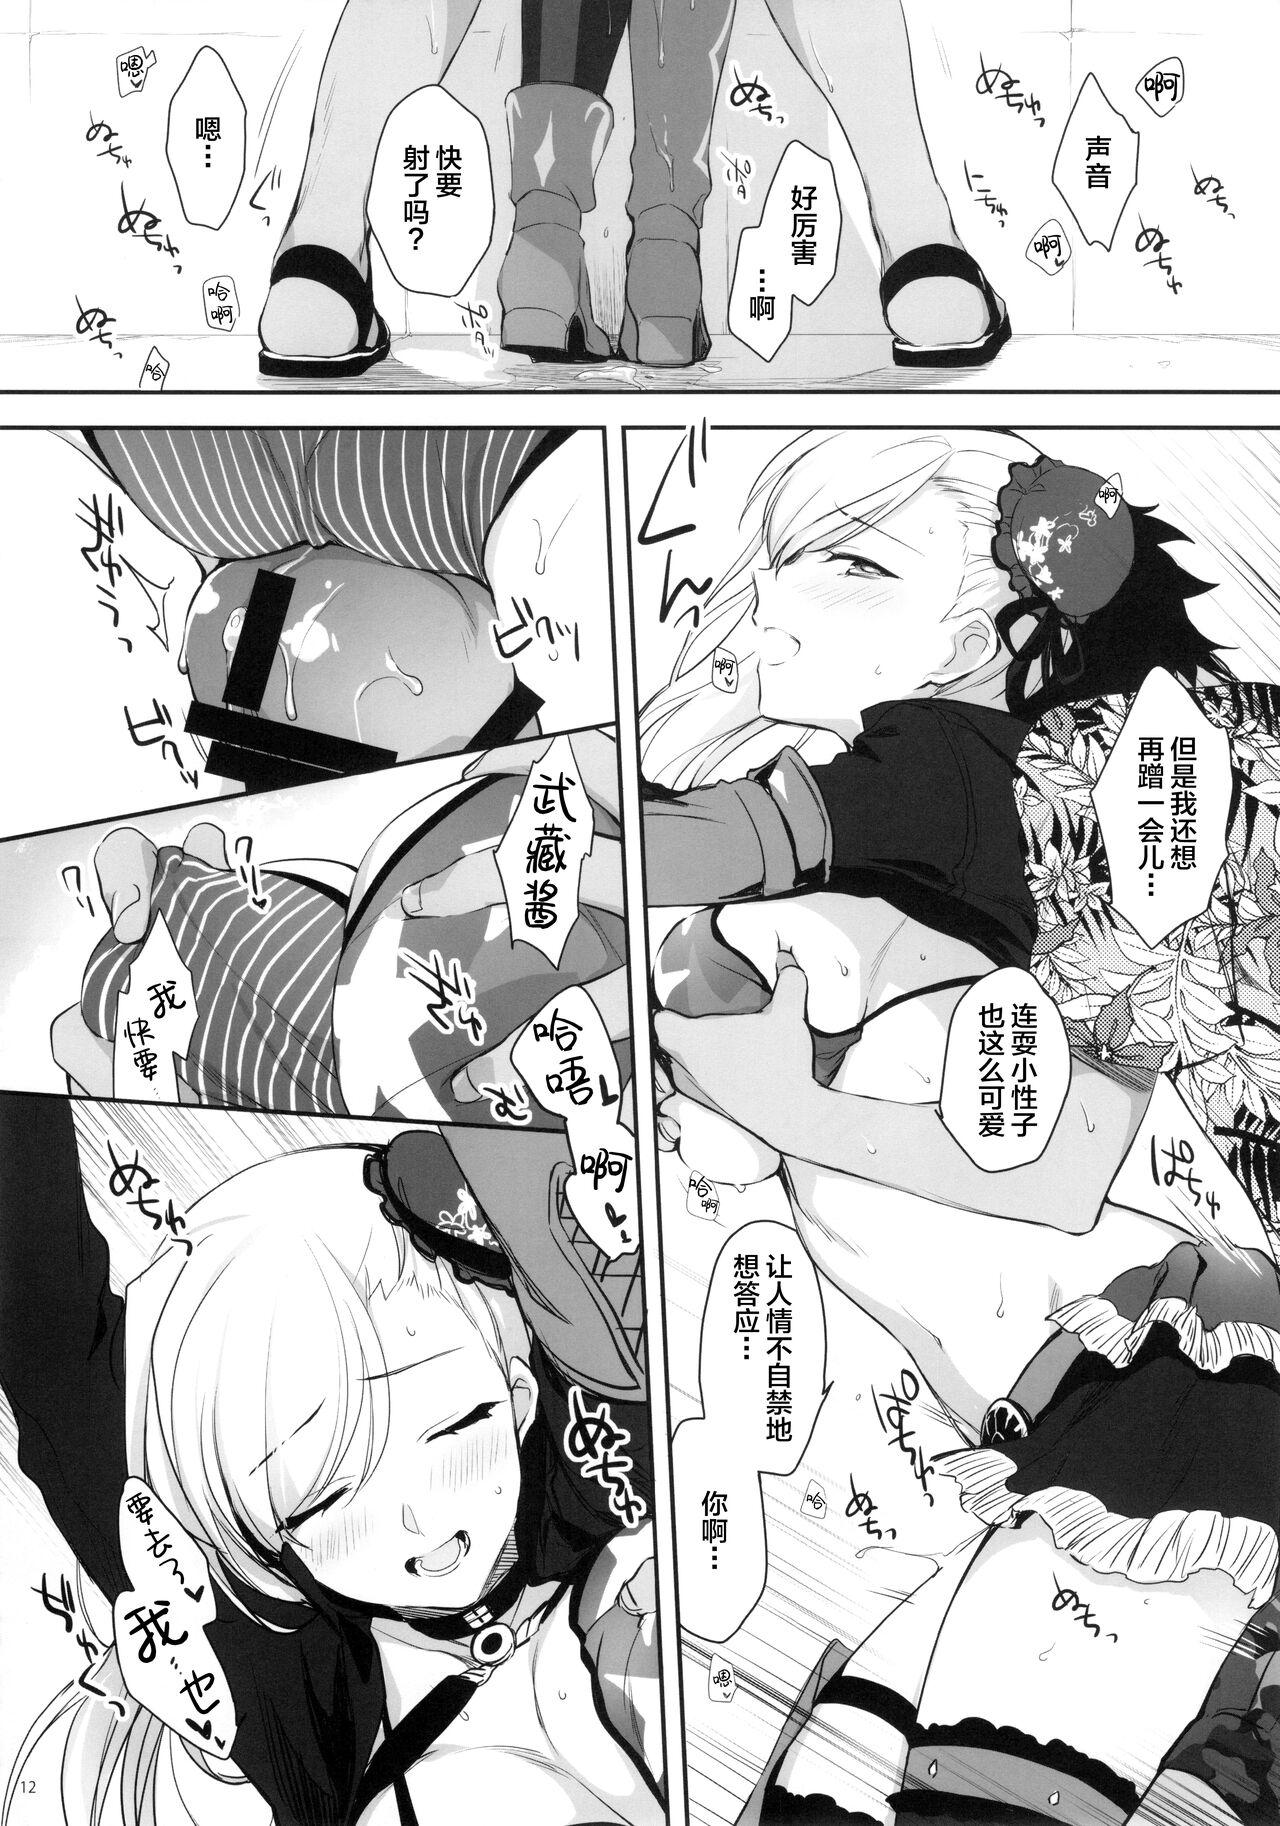 Public Netsu no Tomotta Yubisaki de, Kimi no Rinkaku o Nazoru - Fate grand order Wam - Page 11